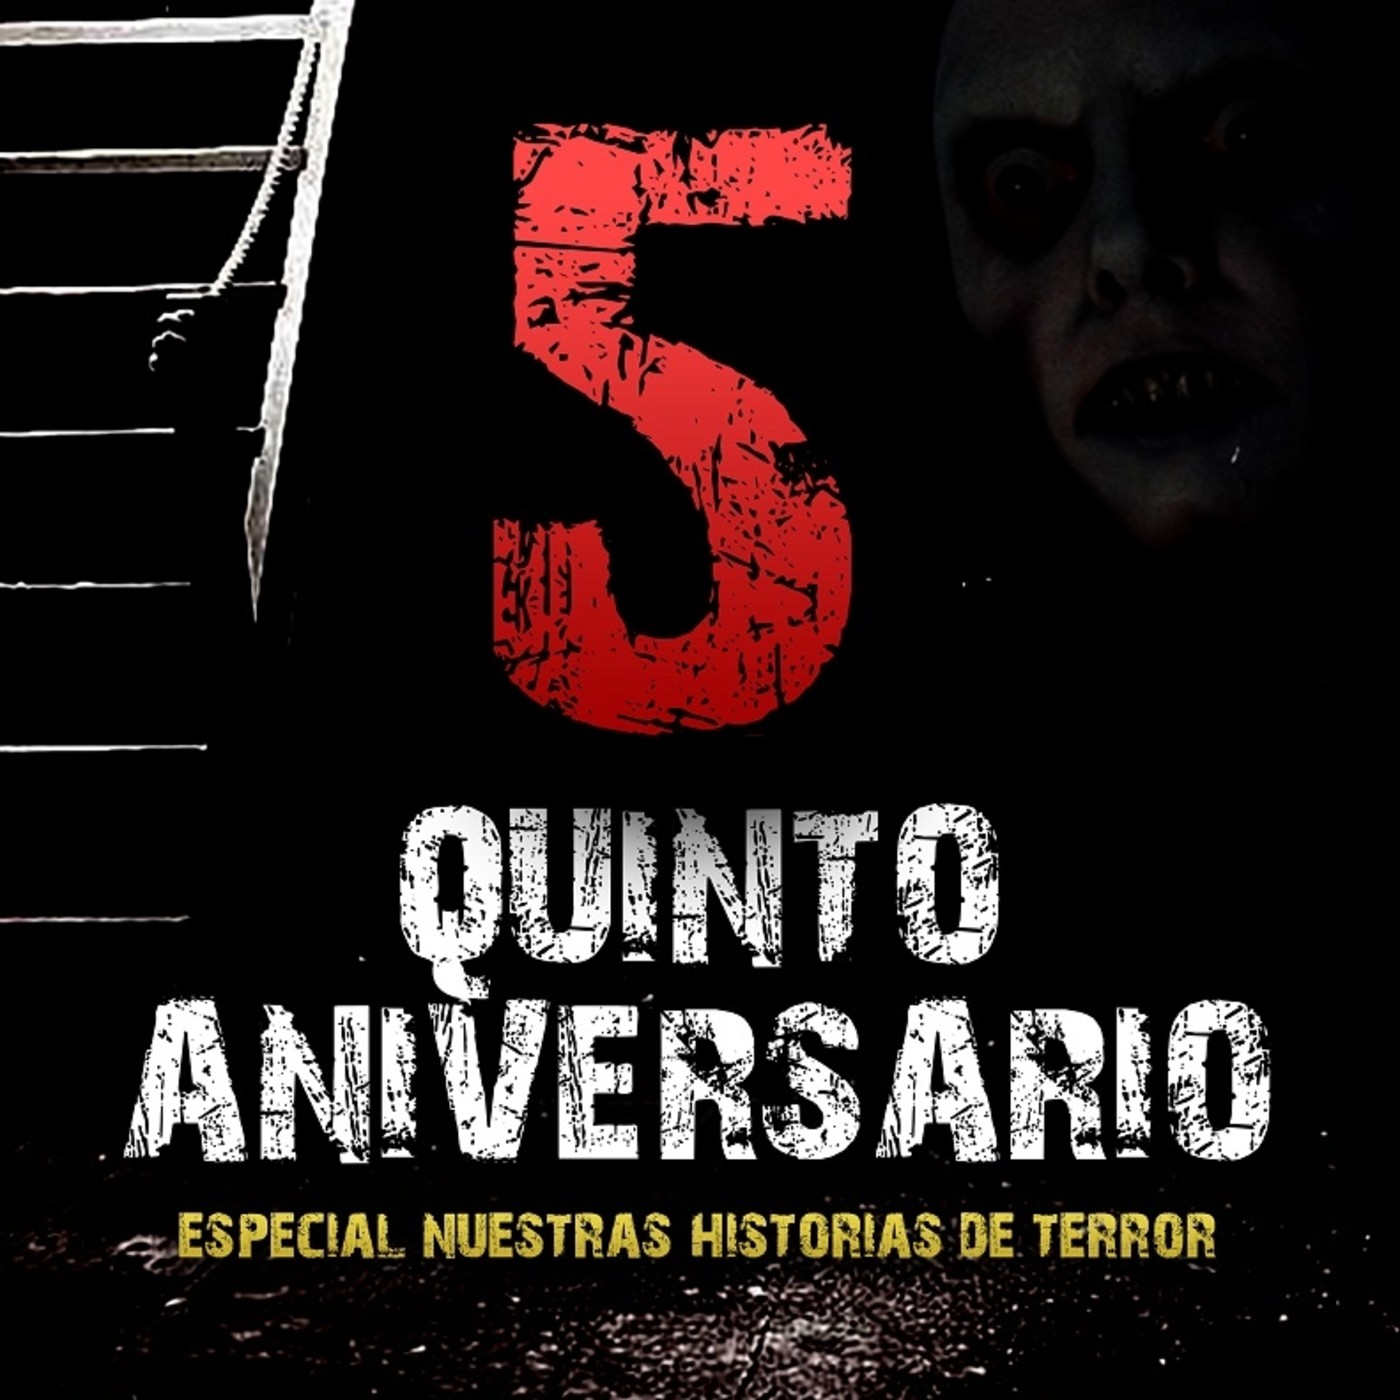 Especial V Aniversario: ”Noche de terror y vivencias personales”